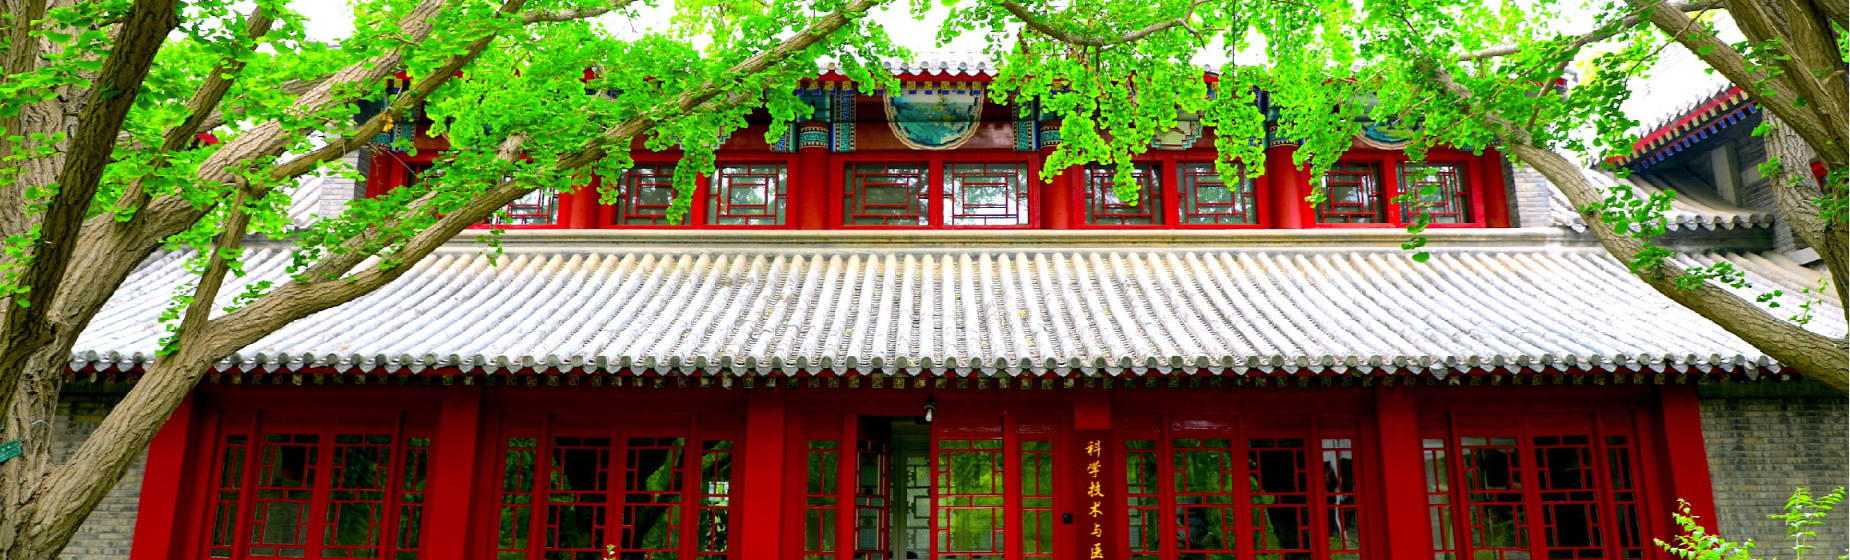 静园风物-北京大学全国中学骨干教师综合教育能力提升博雅讲堂